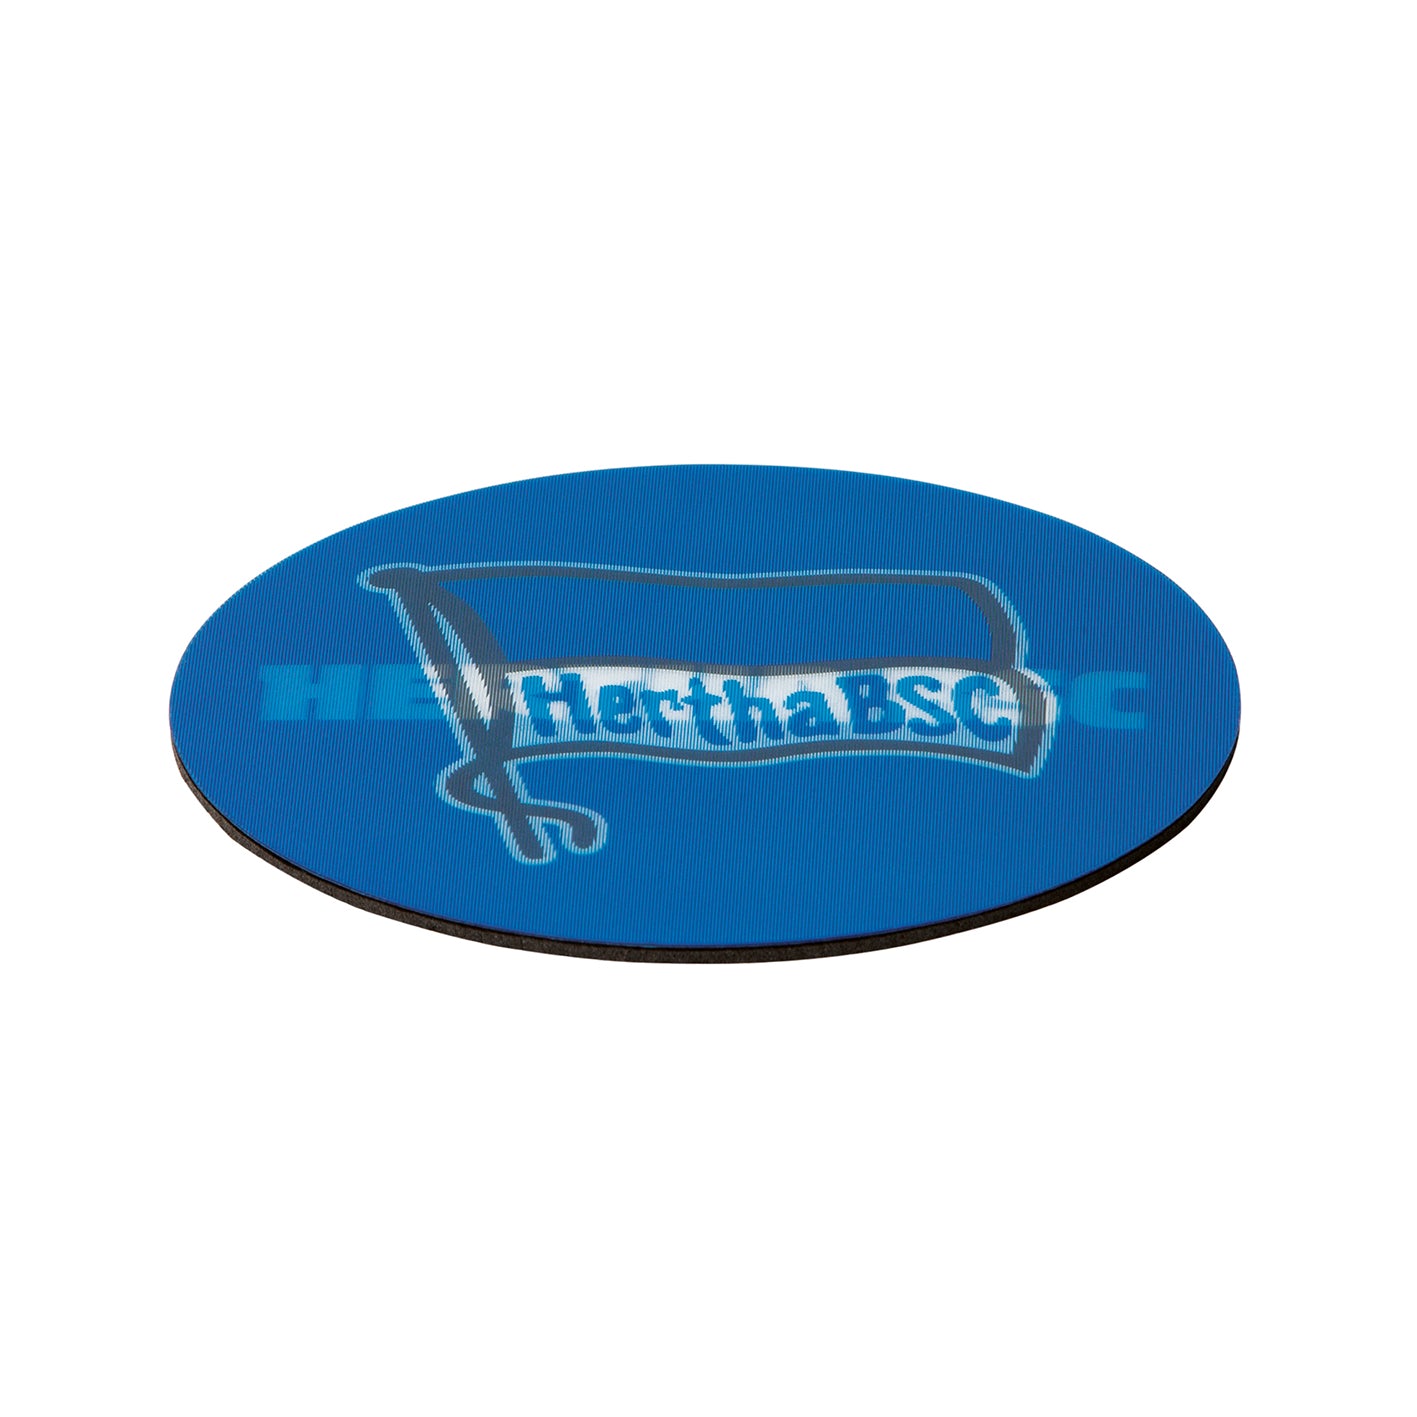 Untersetzer 3D - 10,5 x 10,5 cm - 5er-Set - blau/weiß mit Logo